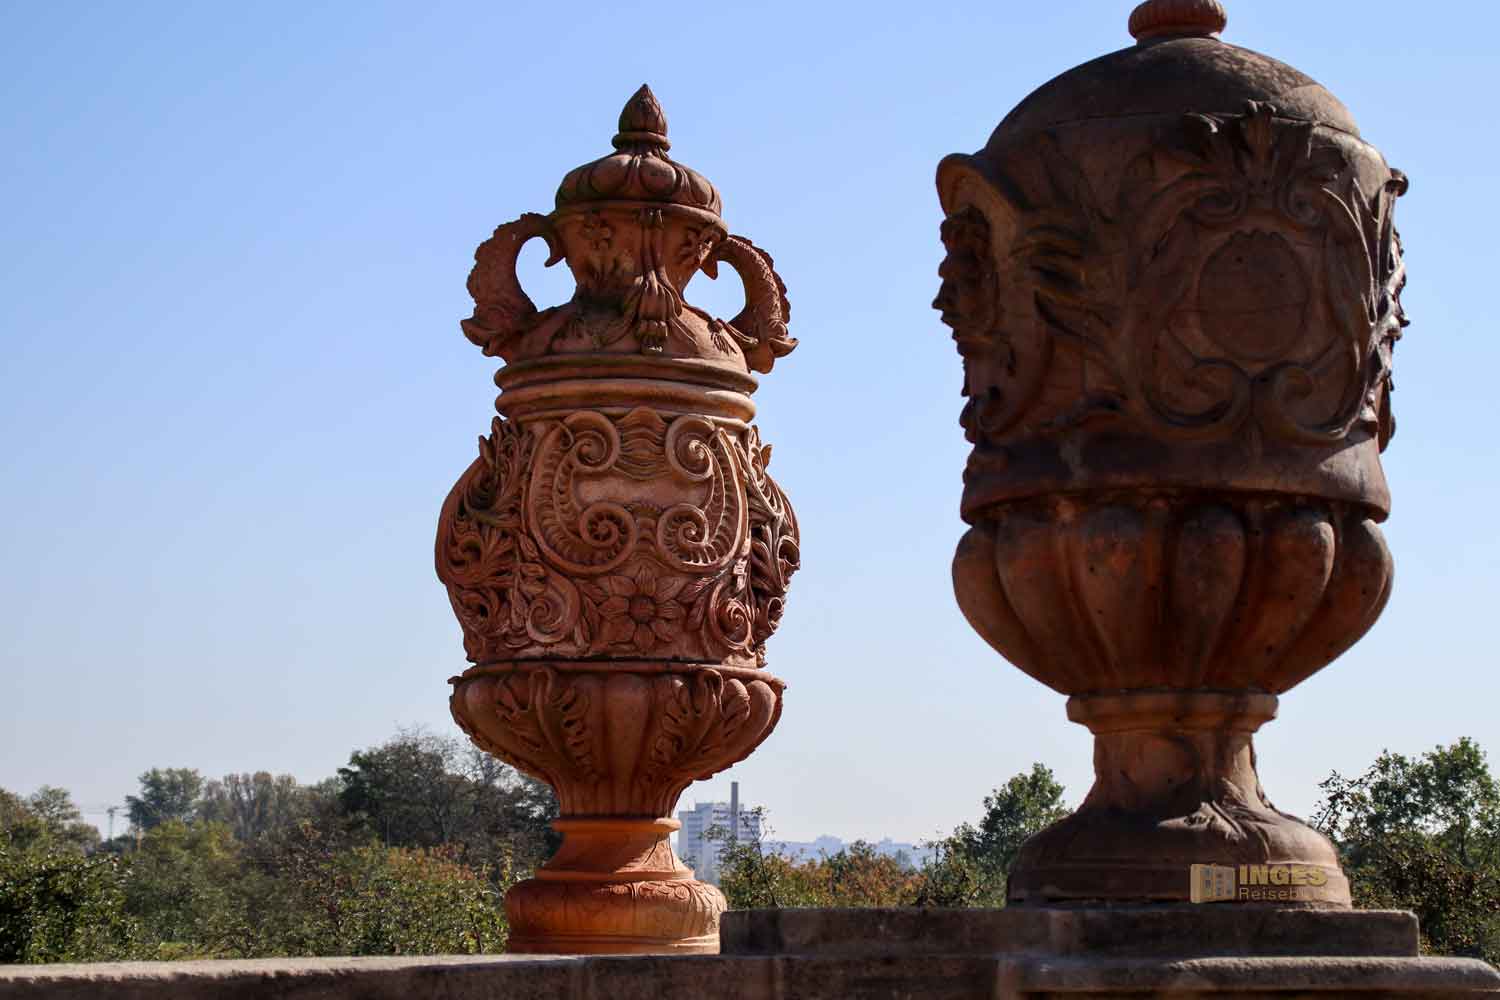 terrakotta-vasen in den gaerten von schloss troja in prag 5425